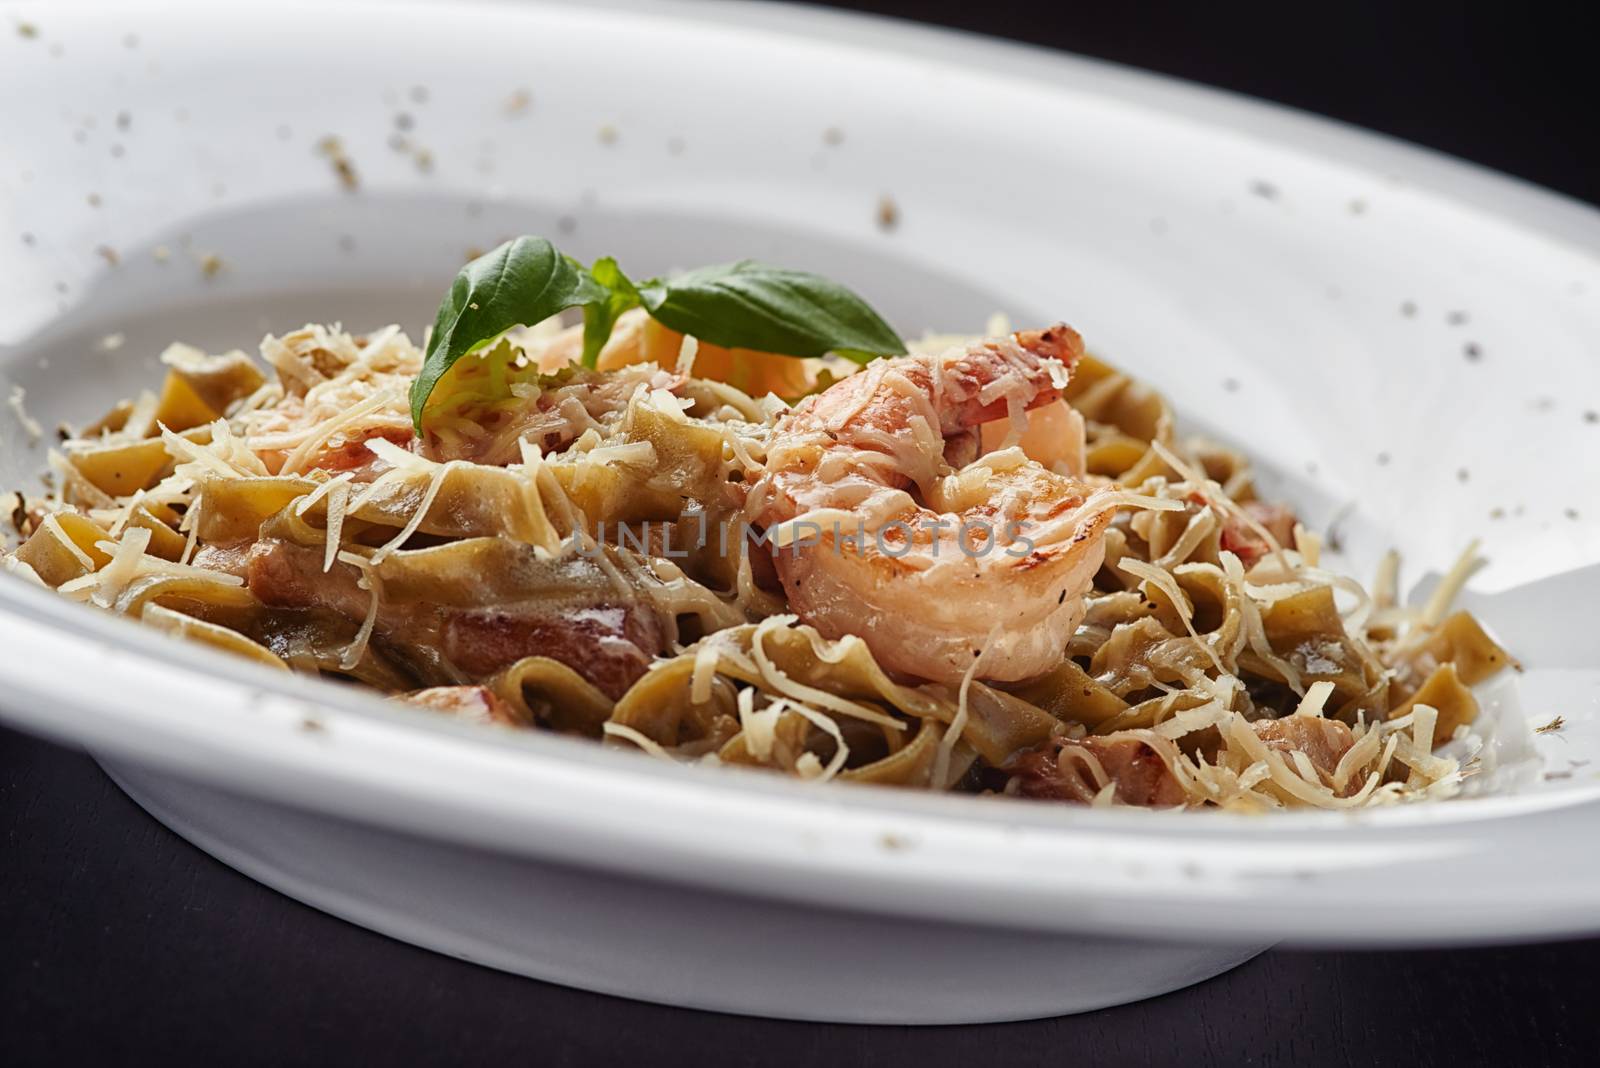 Italian pasta with mushroms and shrimp by shivanetua